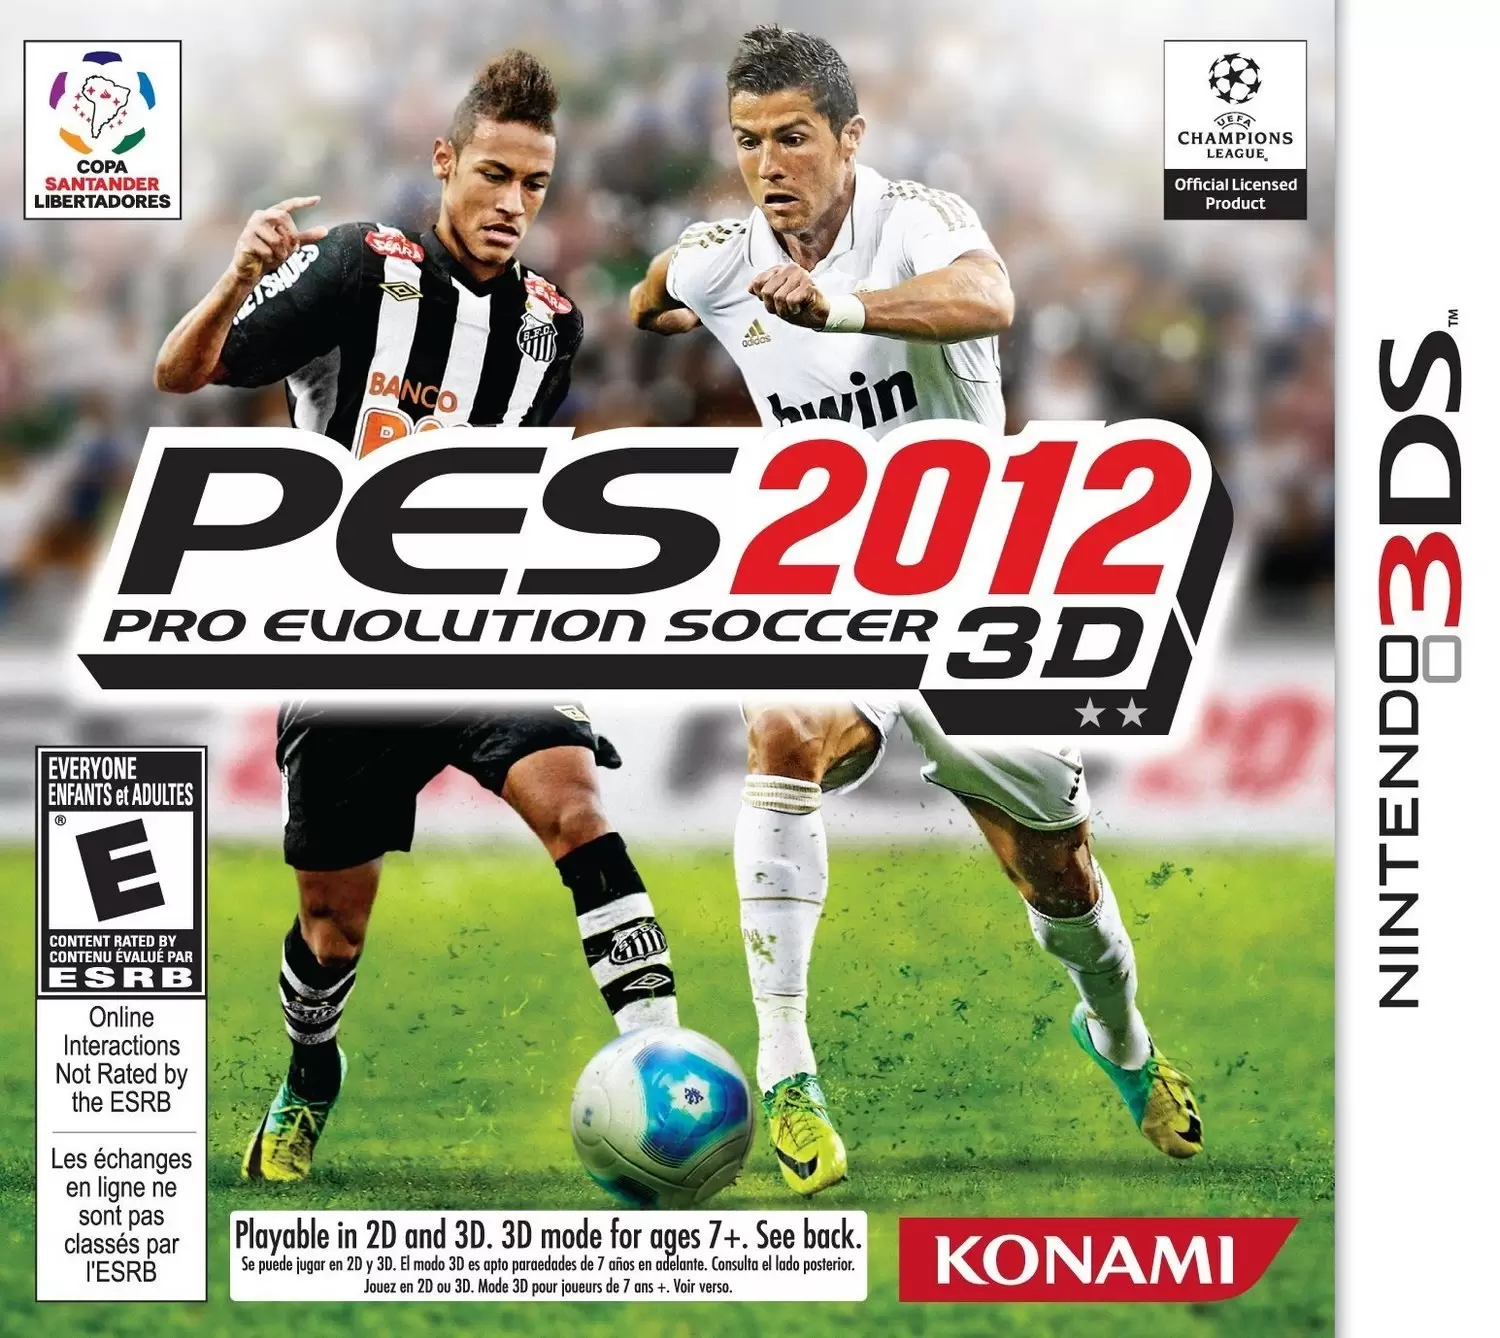 Nintendo 2DS / 3DS Games - Pro Evolution Soccer 2012 3D